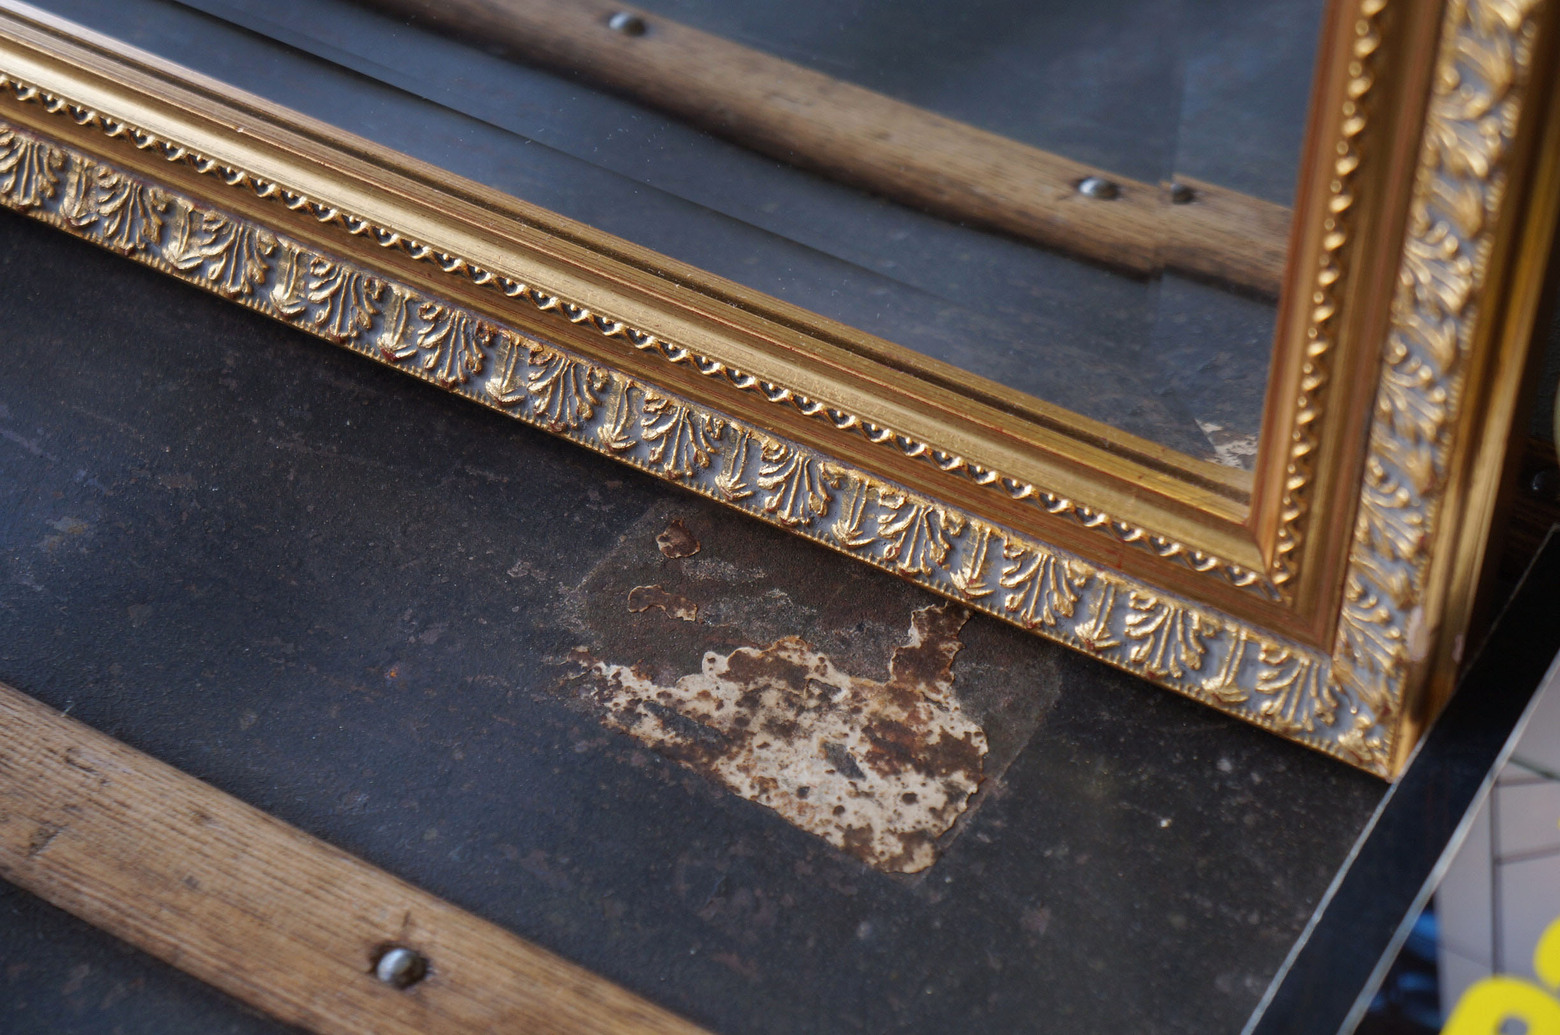 ウォールミラー イタリア製 壁掛け鏡 レリーフ インテリア/Bevelled Mirror Made in Italy | FURUICHI/古一